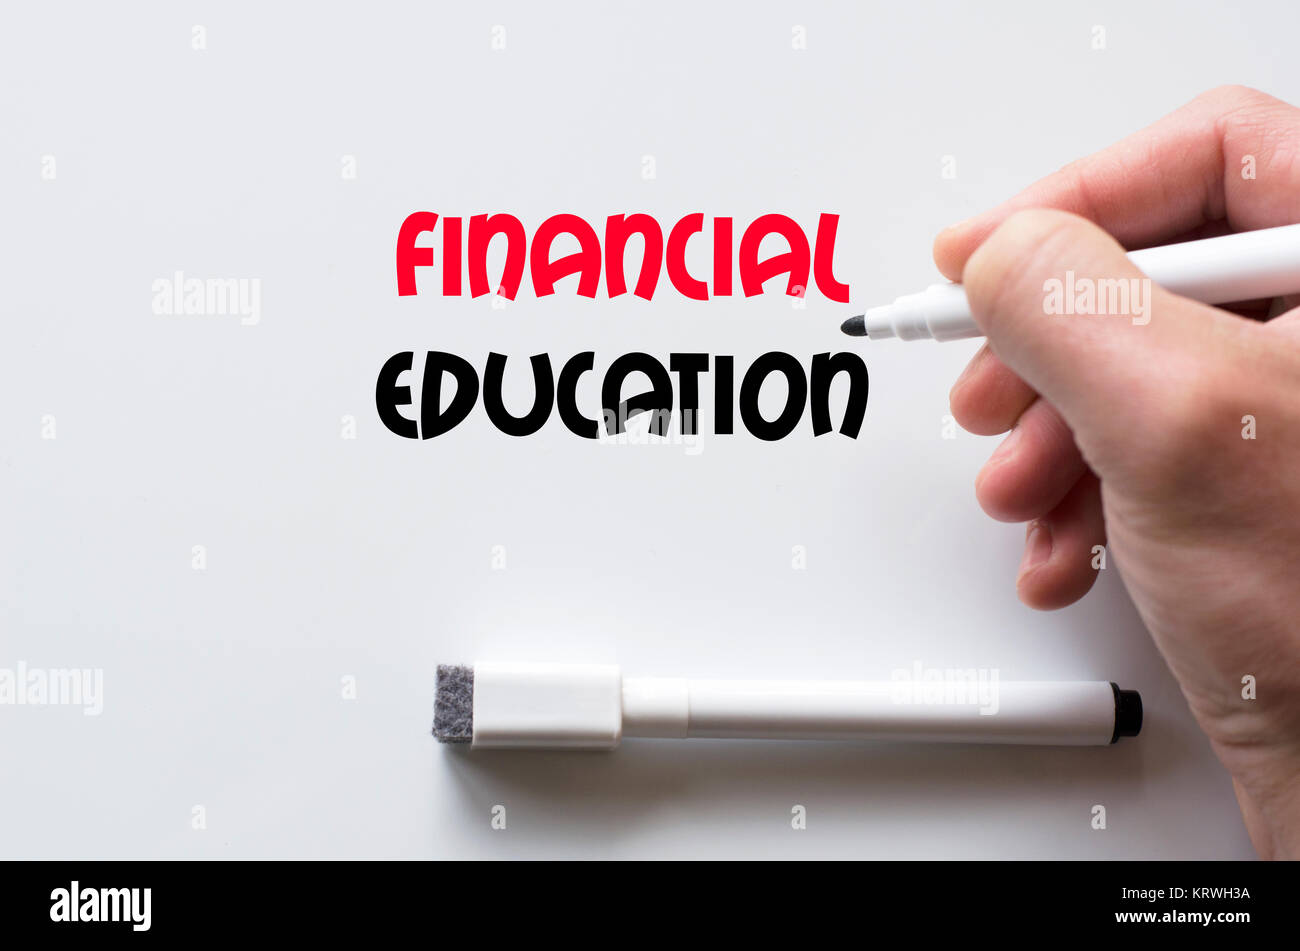 Financial education written on whiteboard Stock Photo